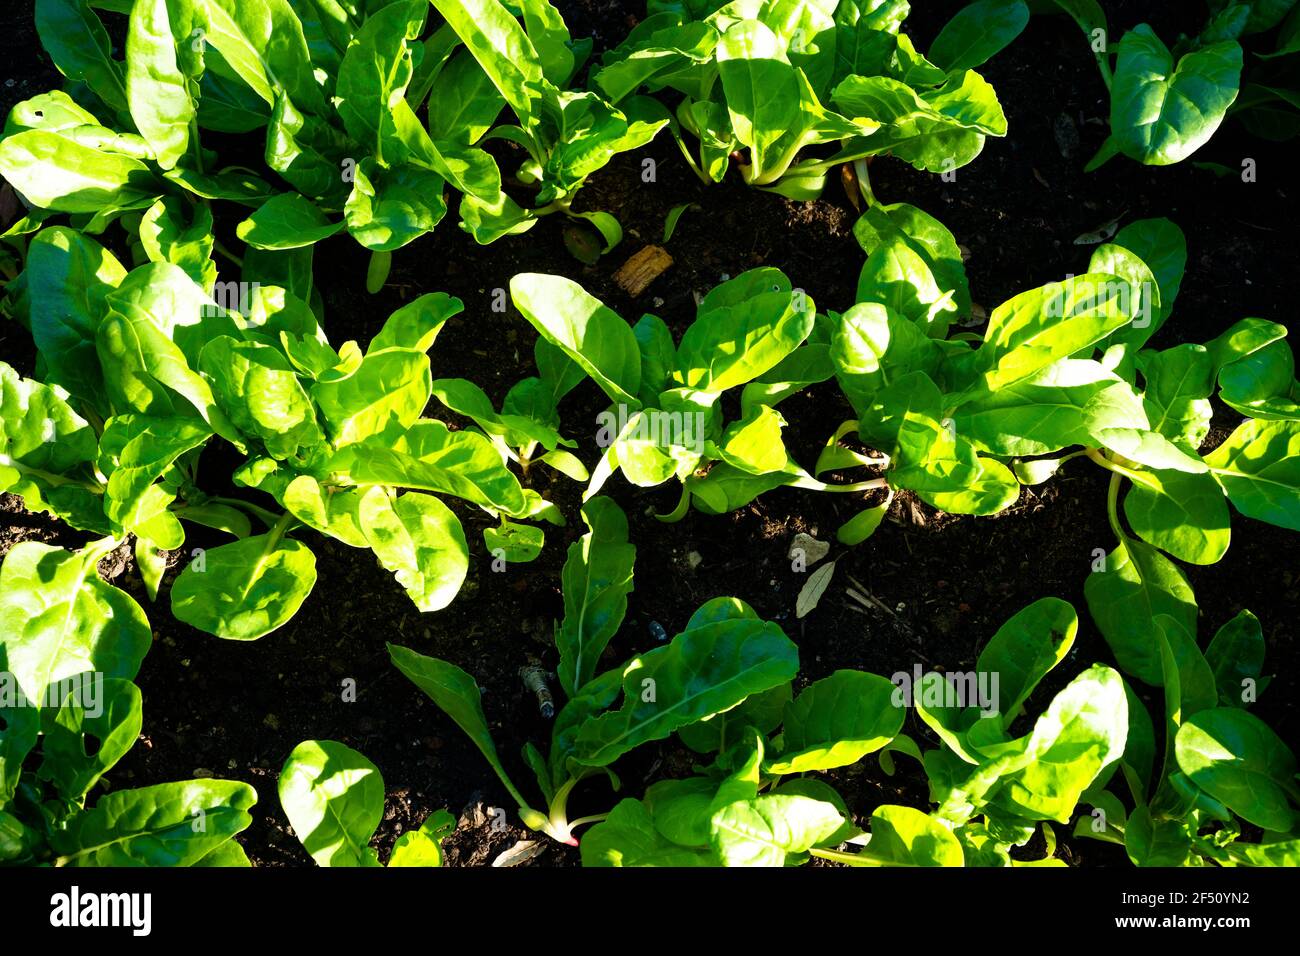 Vista dall'alto di file di bietole svizzere (Beta vulgaris) in un orto a maggio. Foto Stock